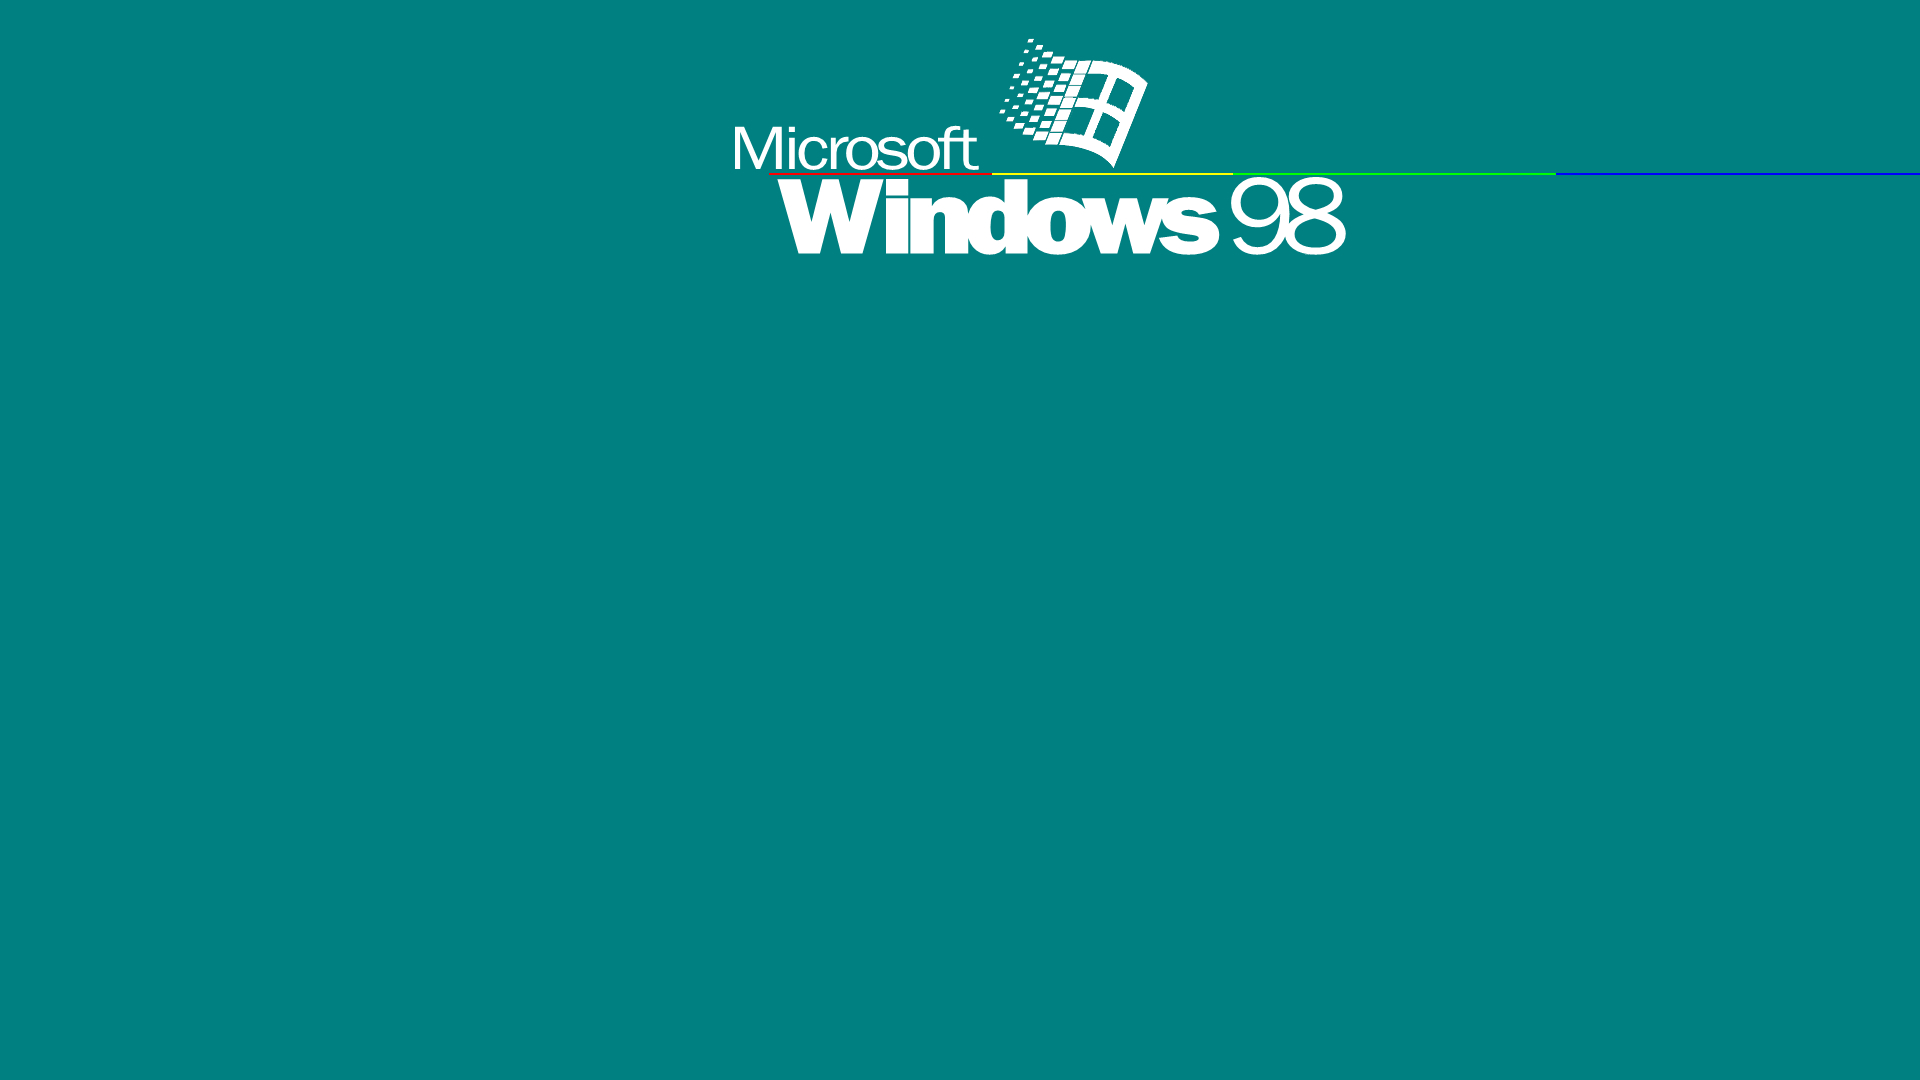 1920x1080 Windows 98 Wallpapers | Windows 98, Windows, Windows wallpaper